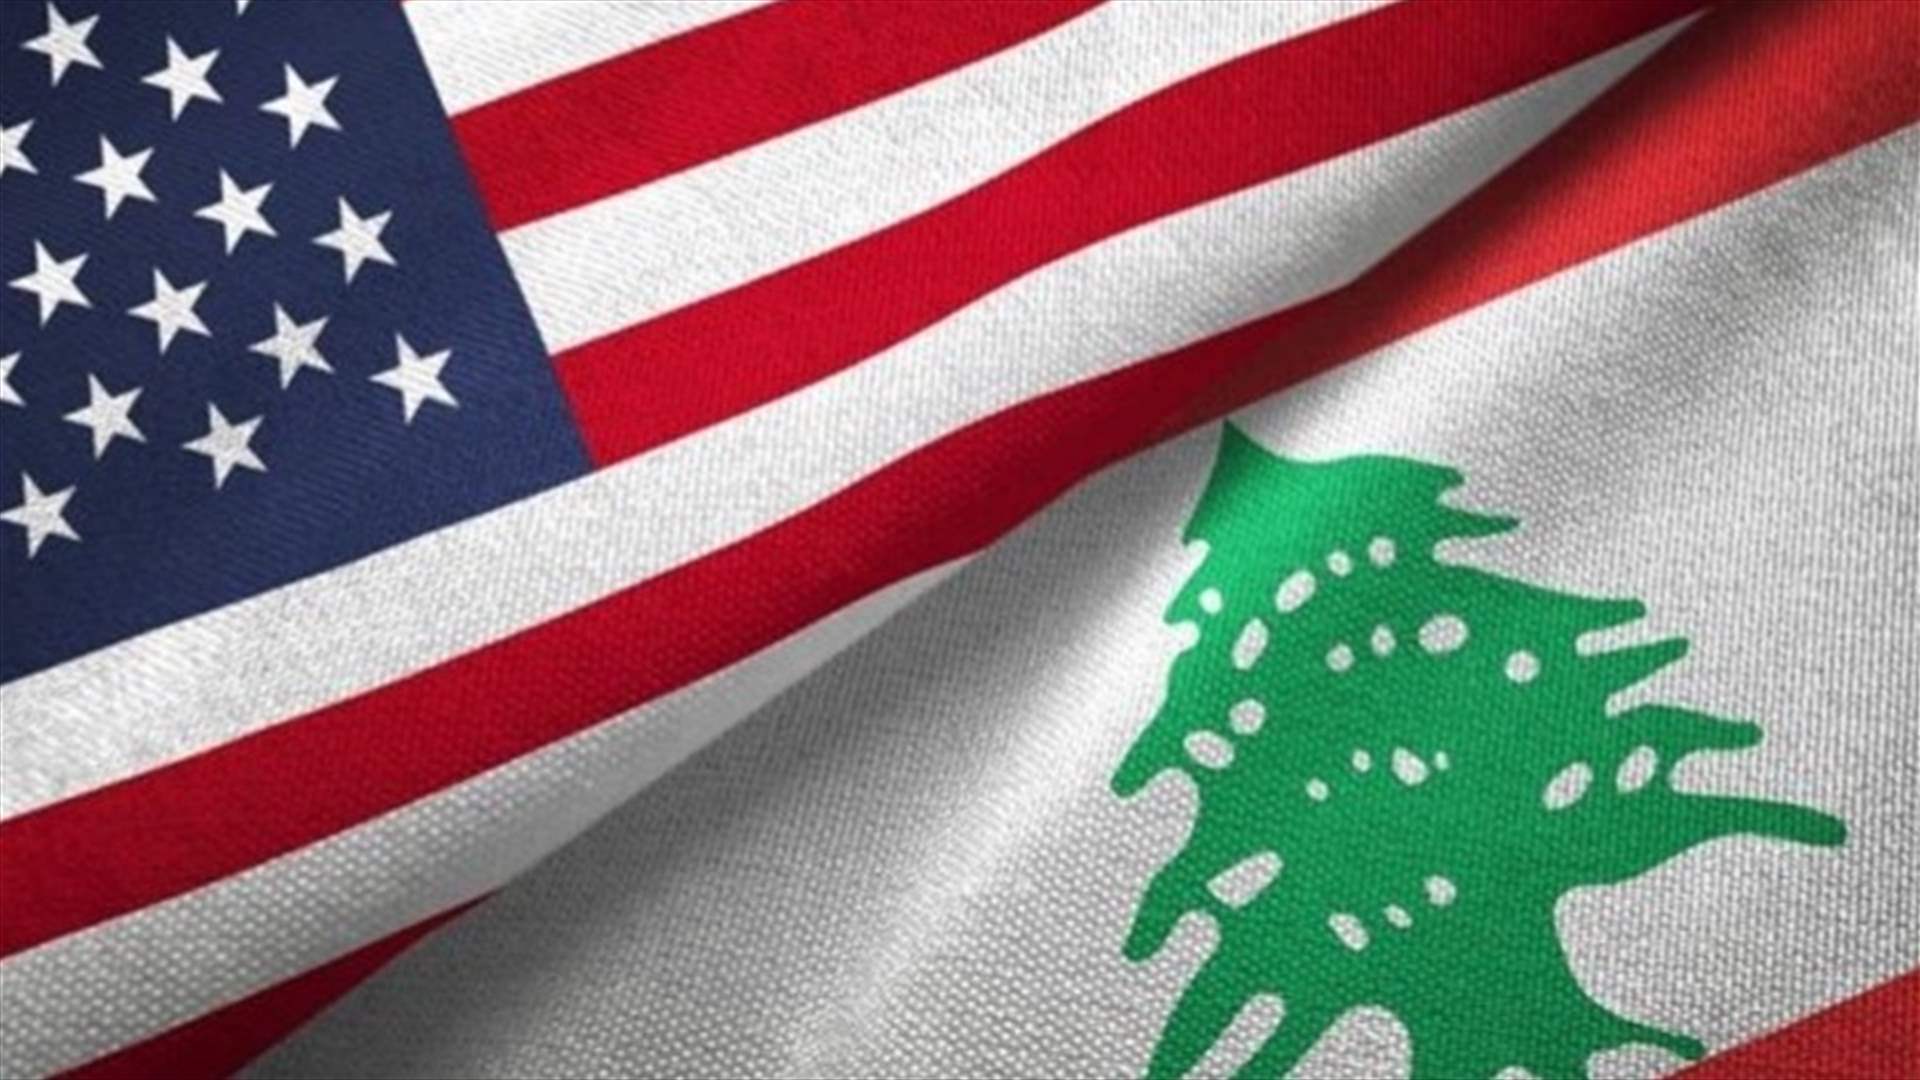 الولايات المتحدة تحض البرلمان اللبناني على انتخاب رئيس للبلاد